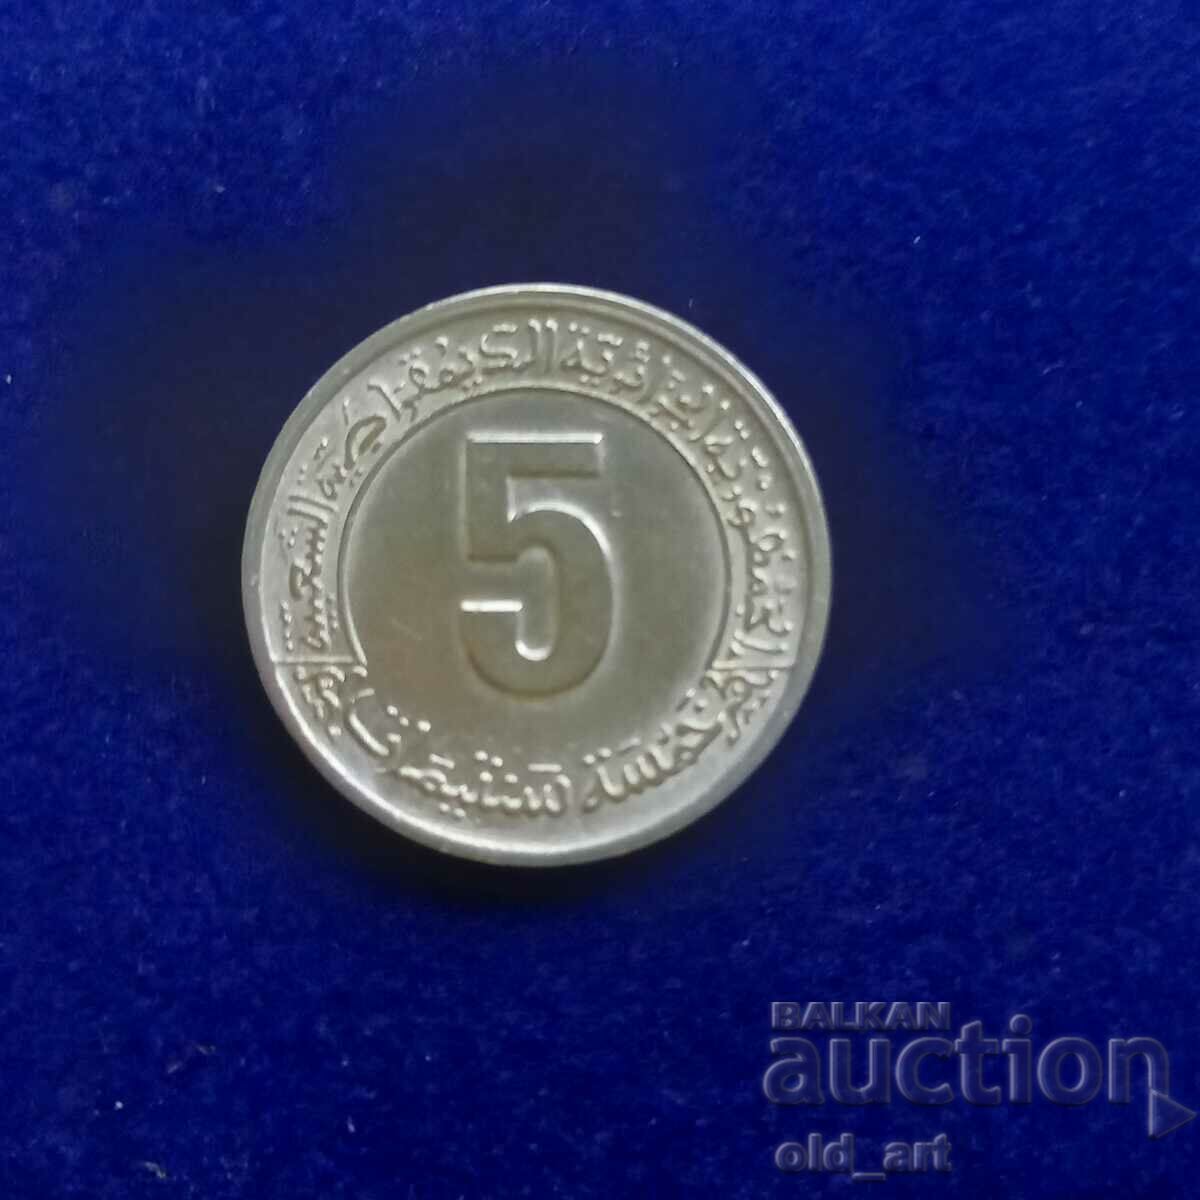 Monedă - Algeria, 5 centimes 1974, comemorativă, al 2-lea al cincilea an. plan